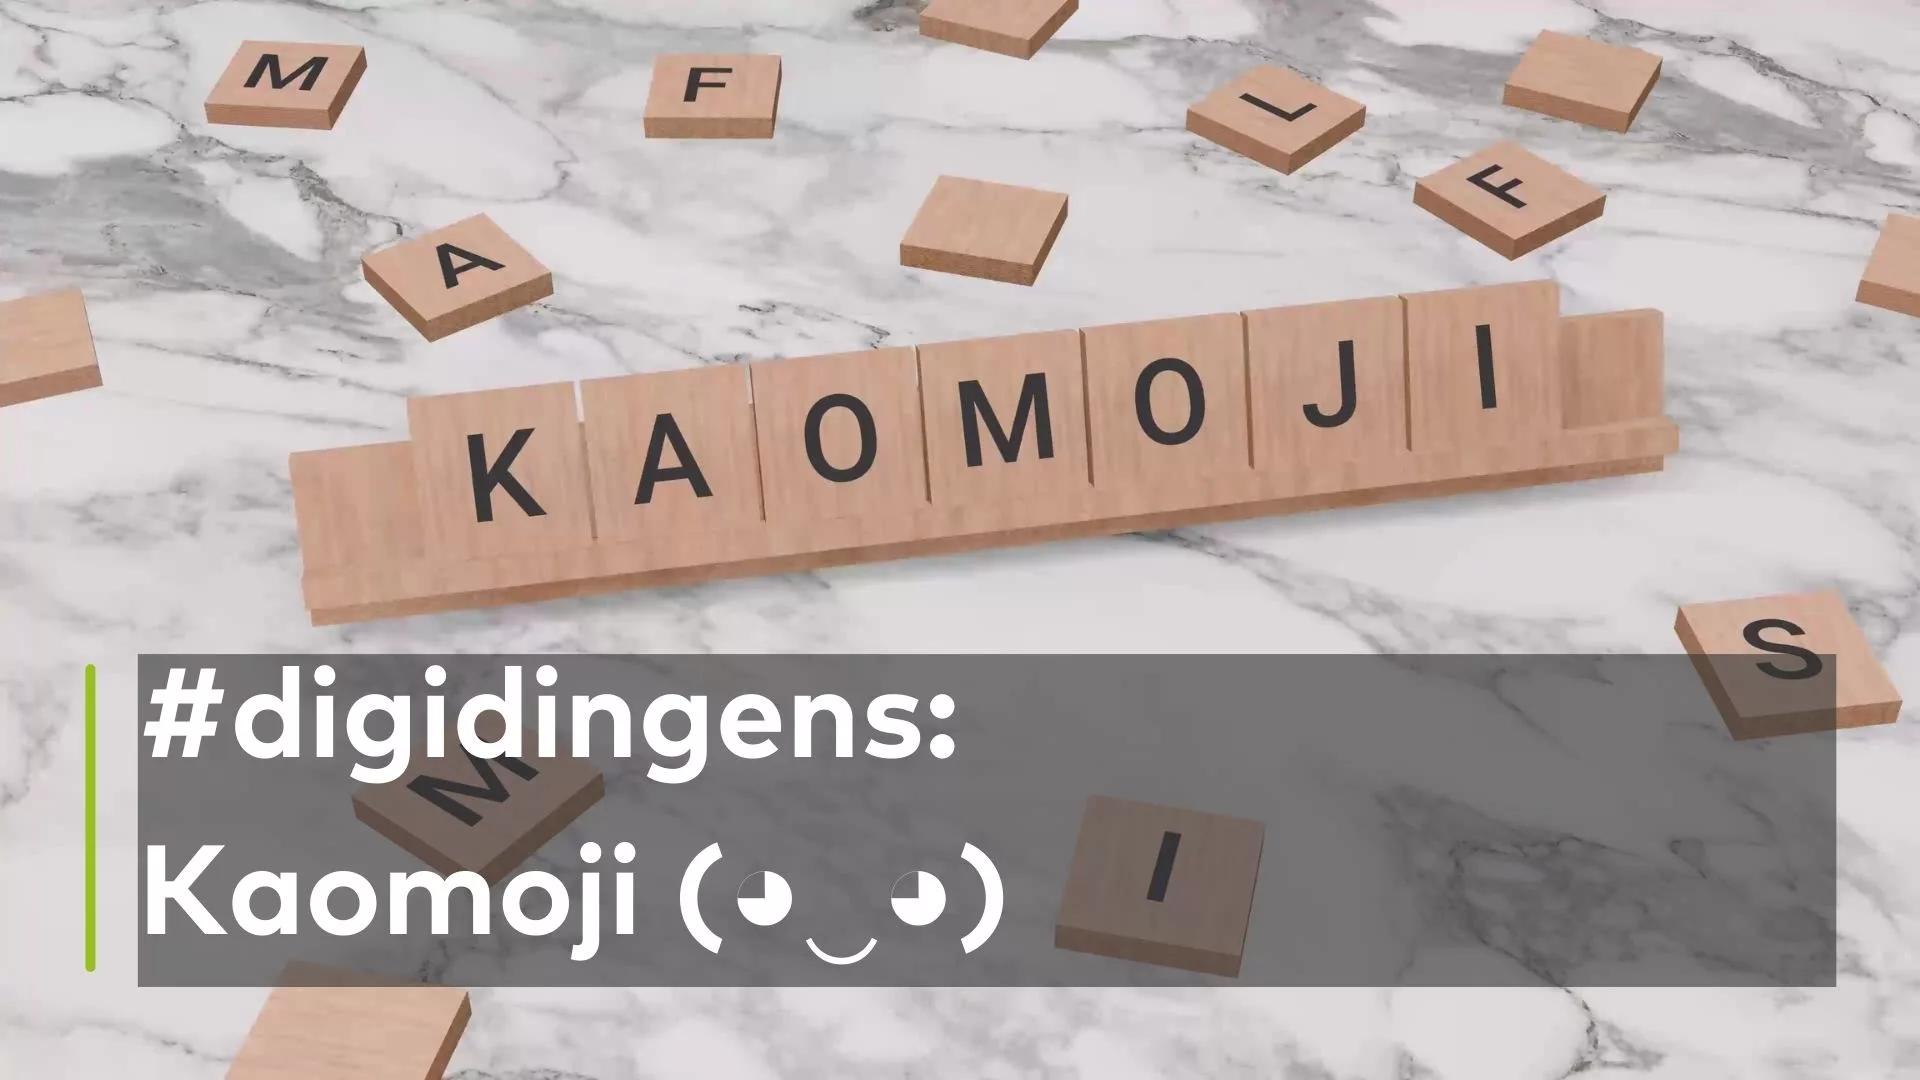 Ein Scrabble Spiel, mit welchem das Wort Kaomoji buchstabiert wird. In der Bildunterschrift steht: #digidingens: Kaomoji (◕‿◕)